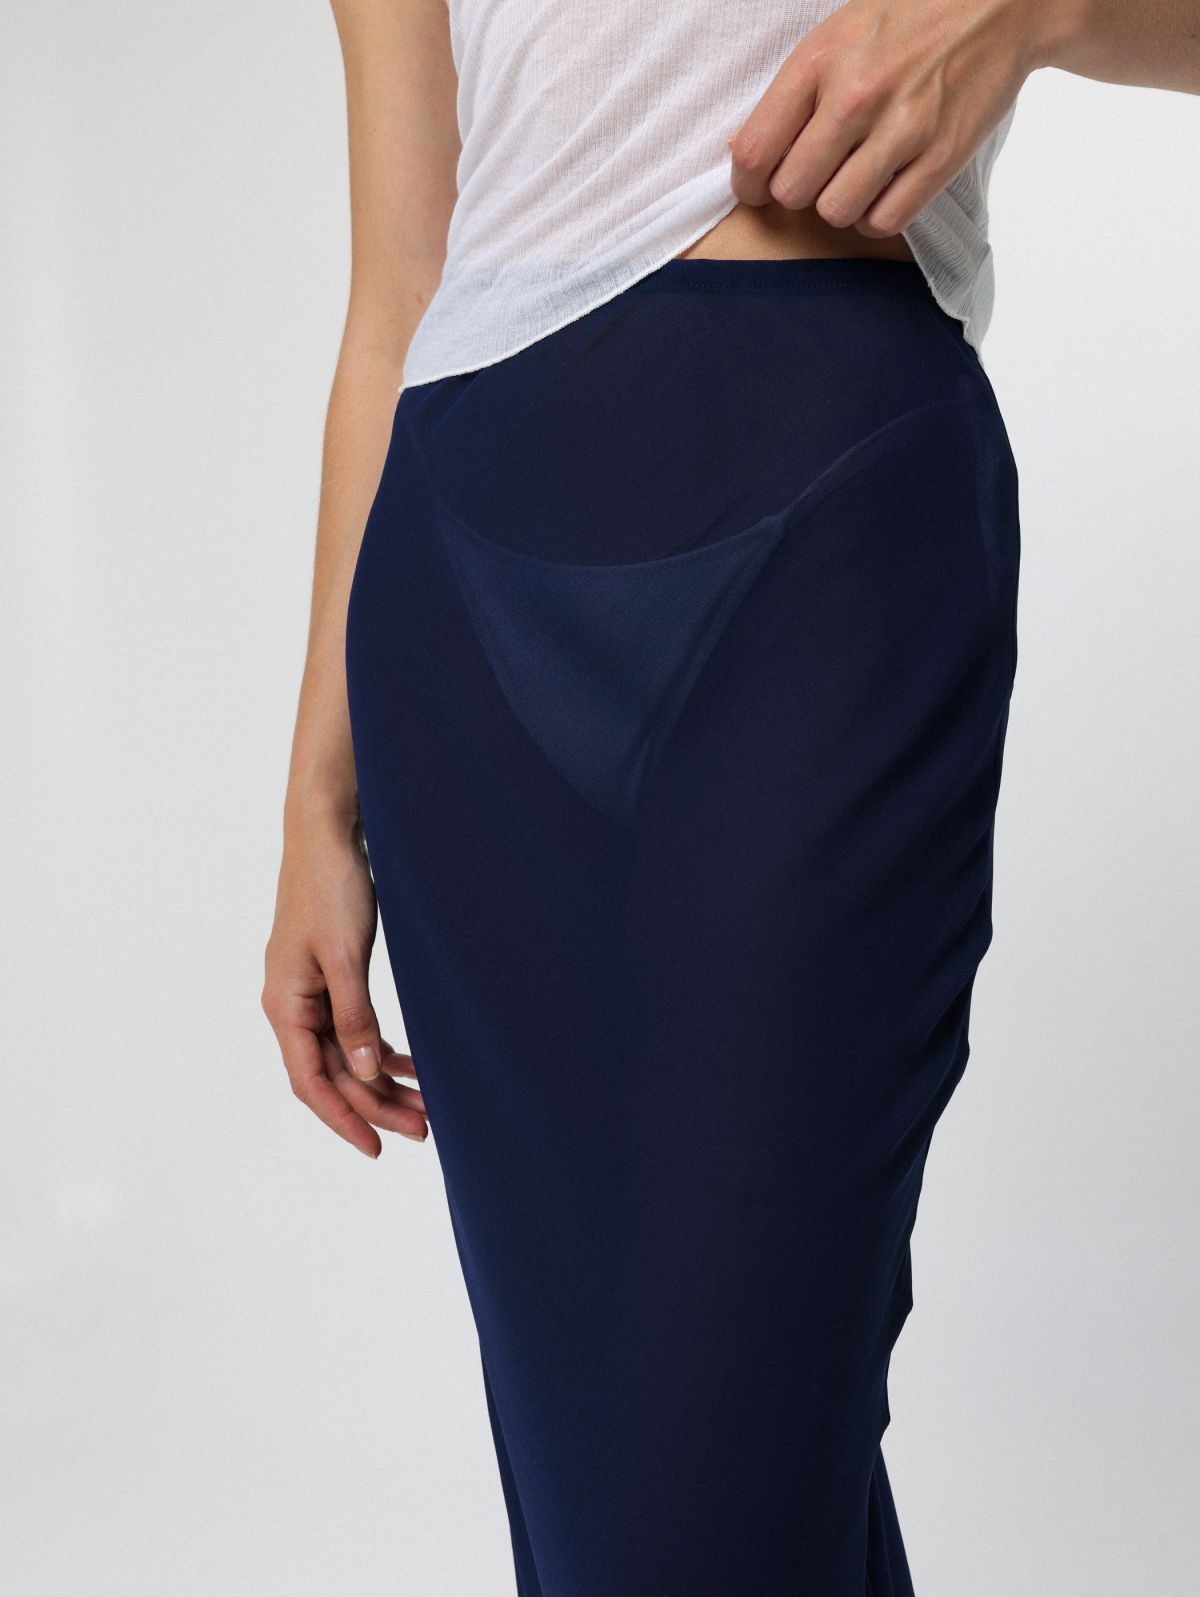  חצאית מקסי מבד שיפון / Tal Noy של TX COLLAB